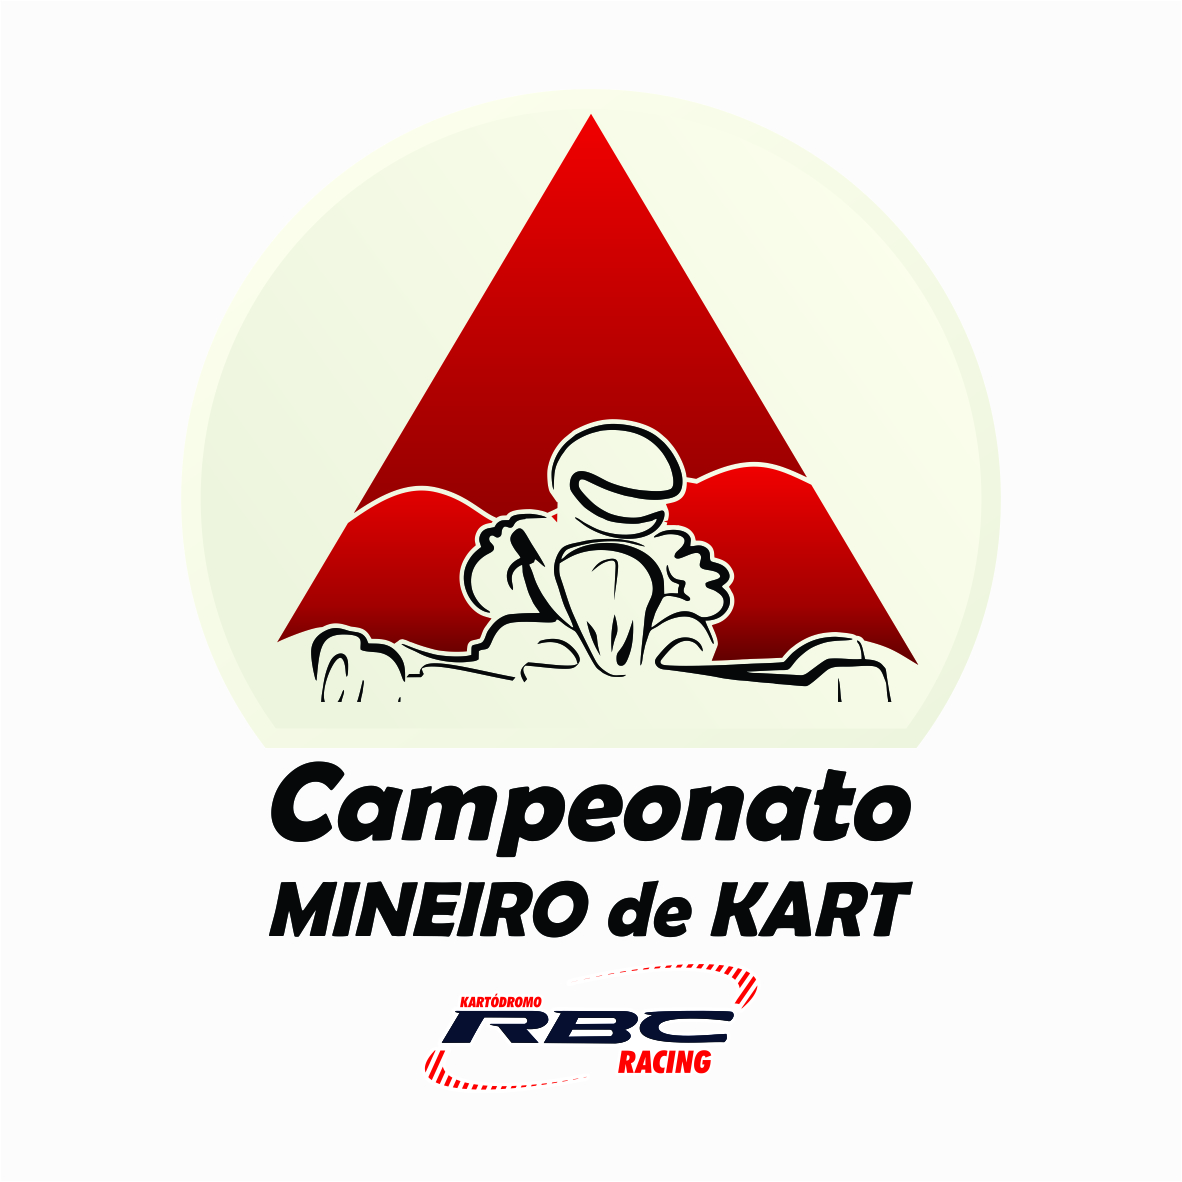 Campeonato Mineiro de kart